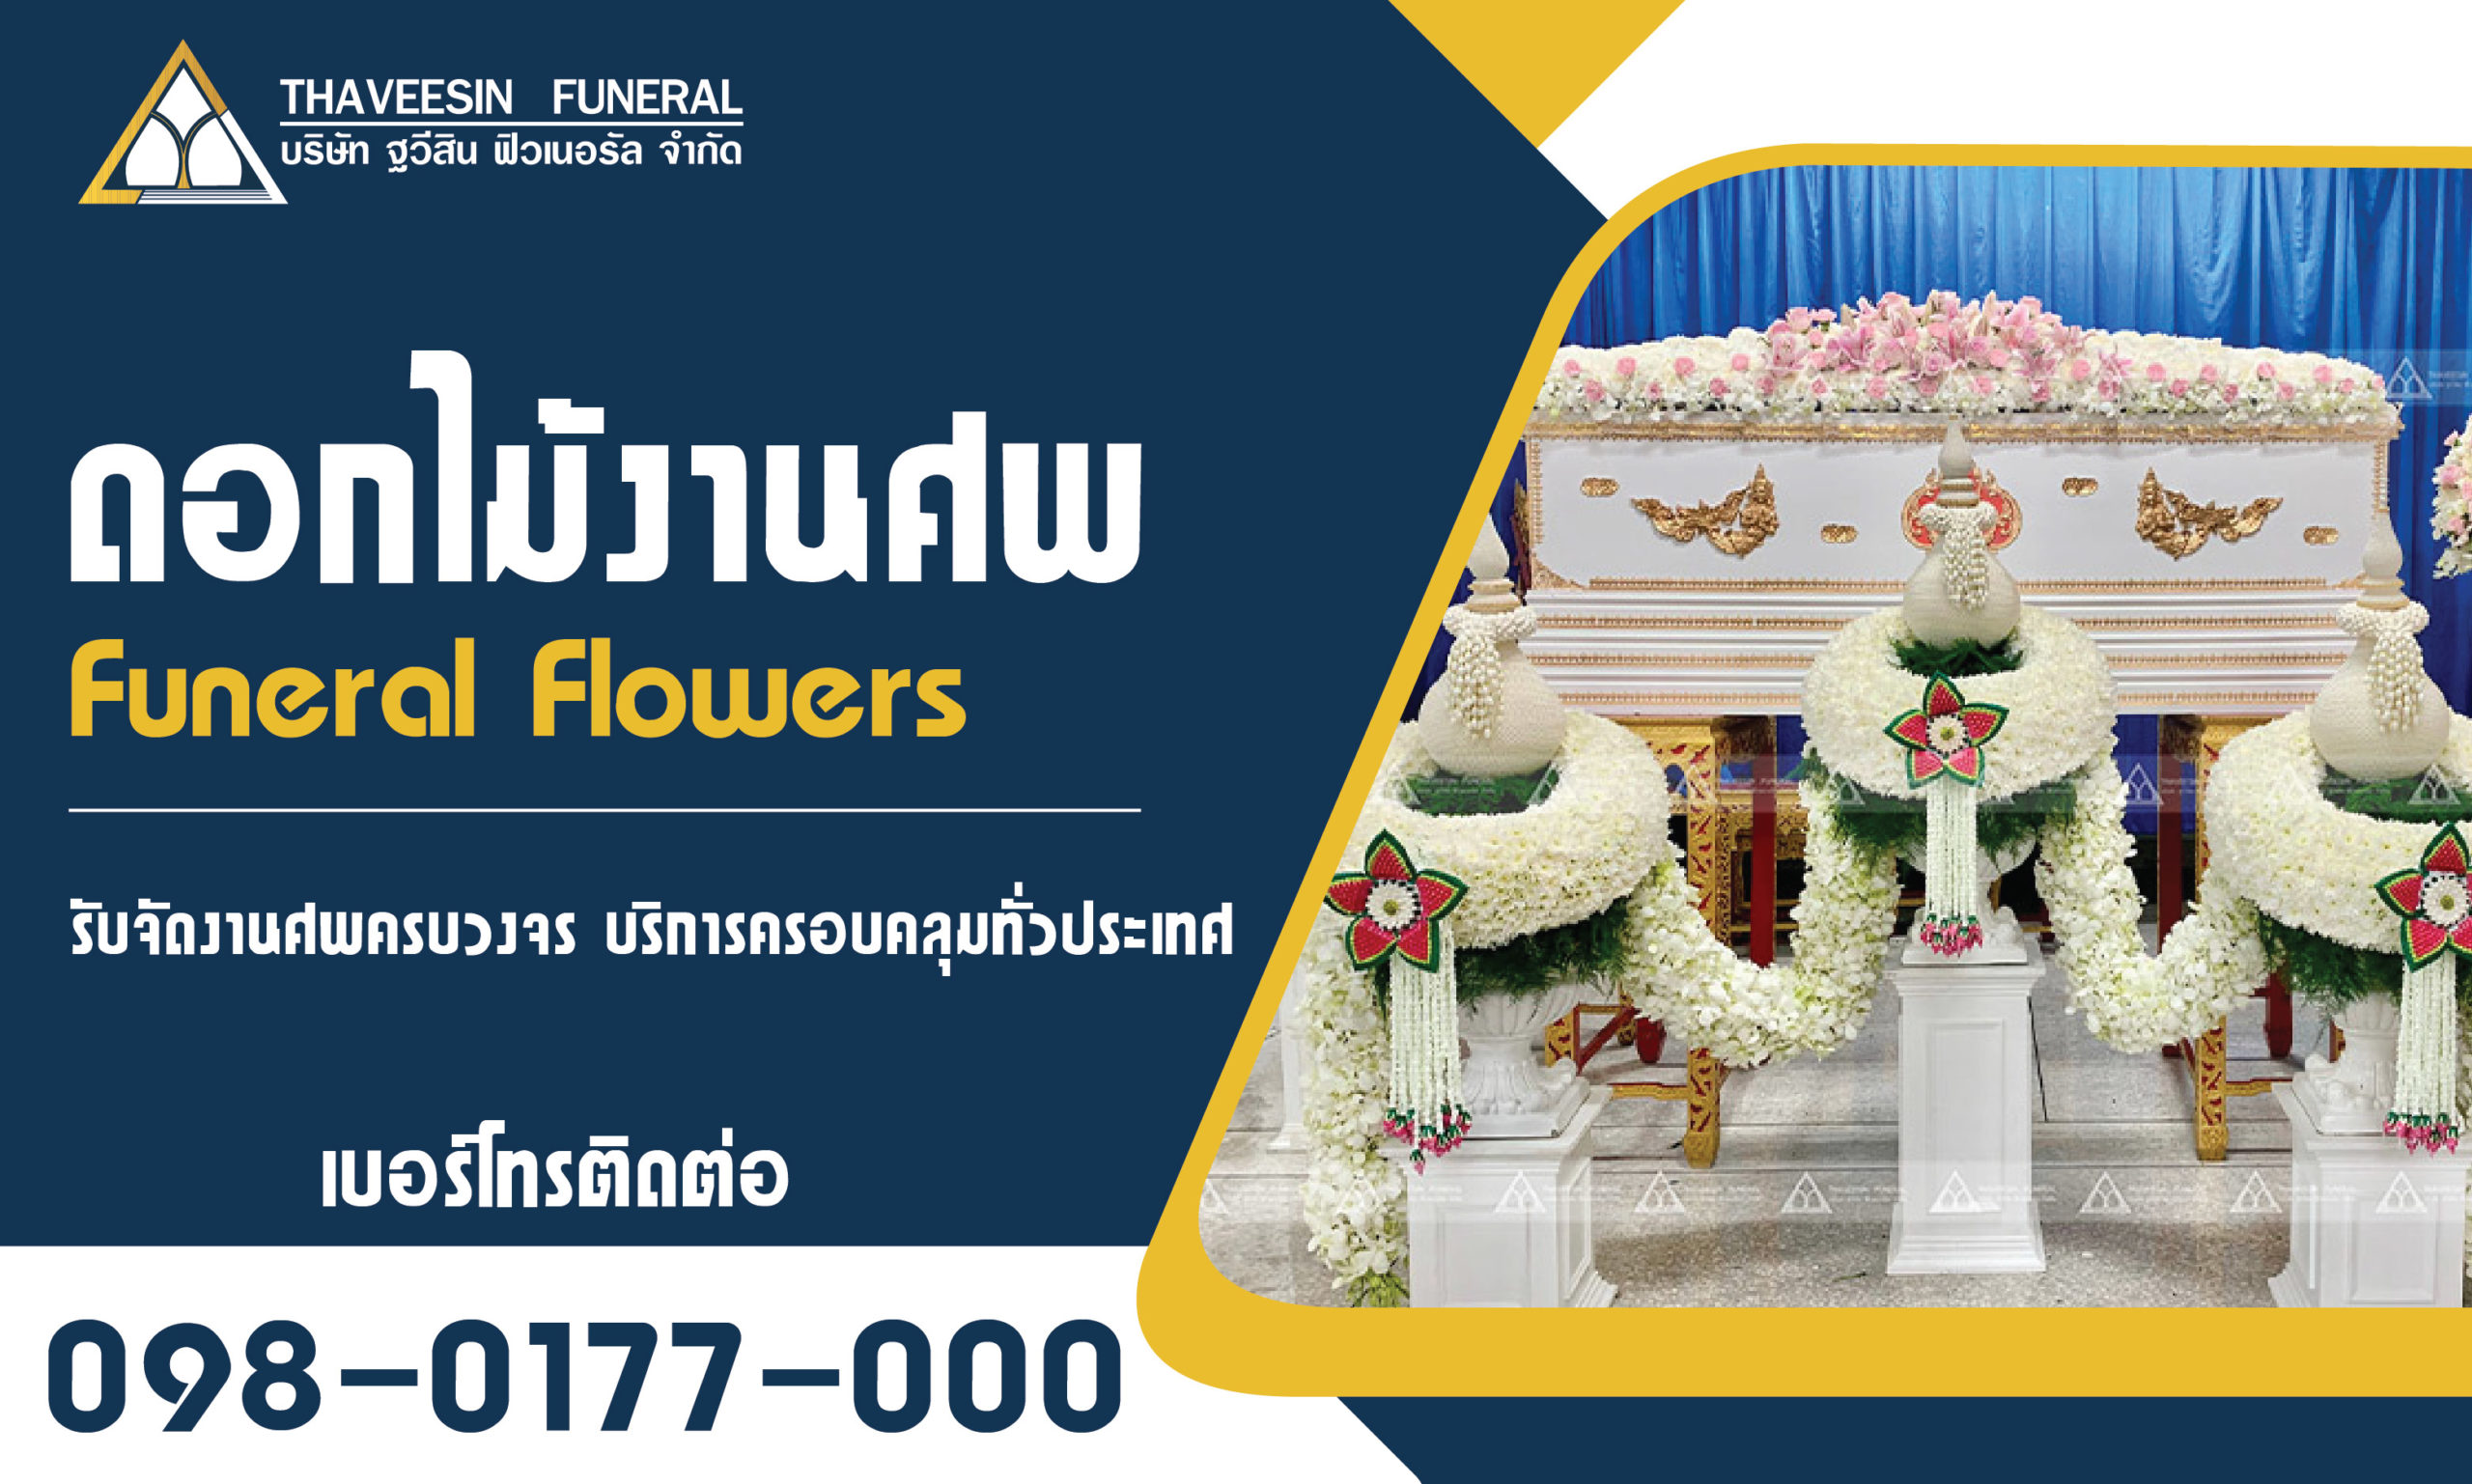 ดอกไม้งานศพ ดอกไม้หน้าศพ รับจัดงานศพ รับจัดดอกไม้หน้าศพ